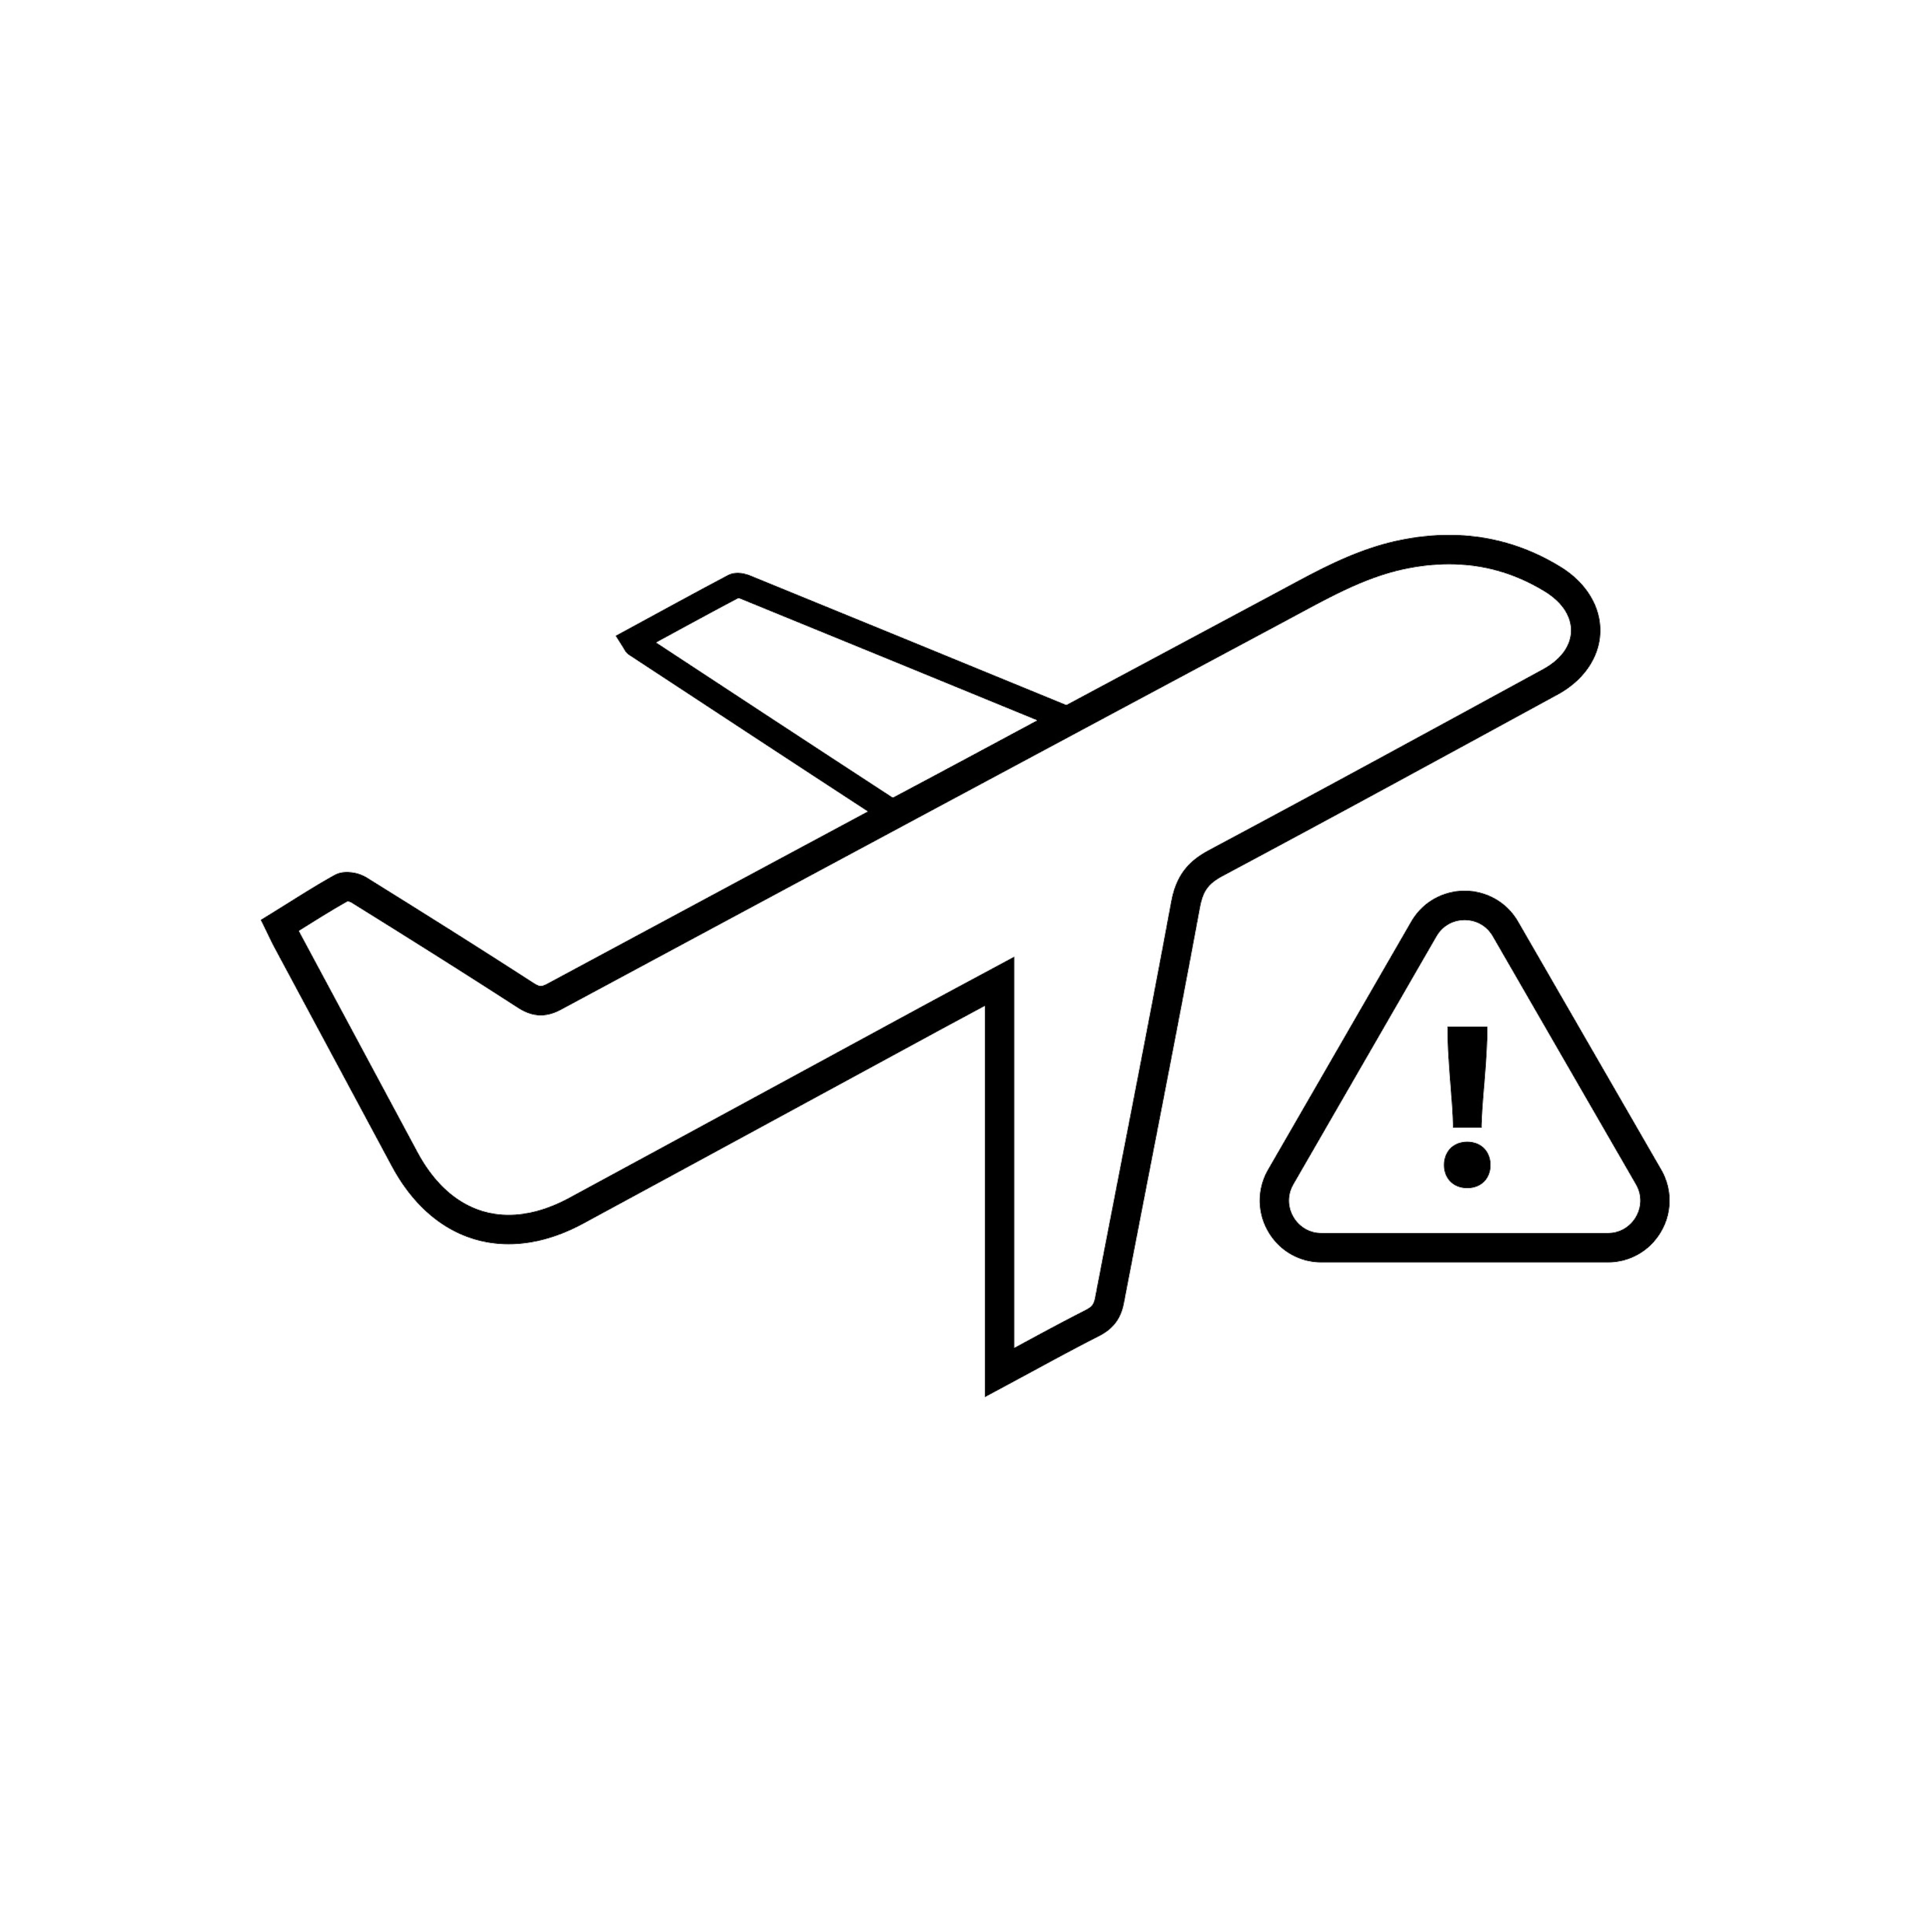 Icon for flight delays